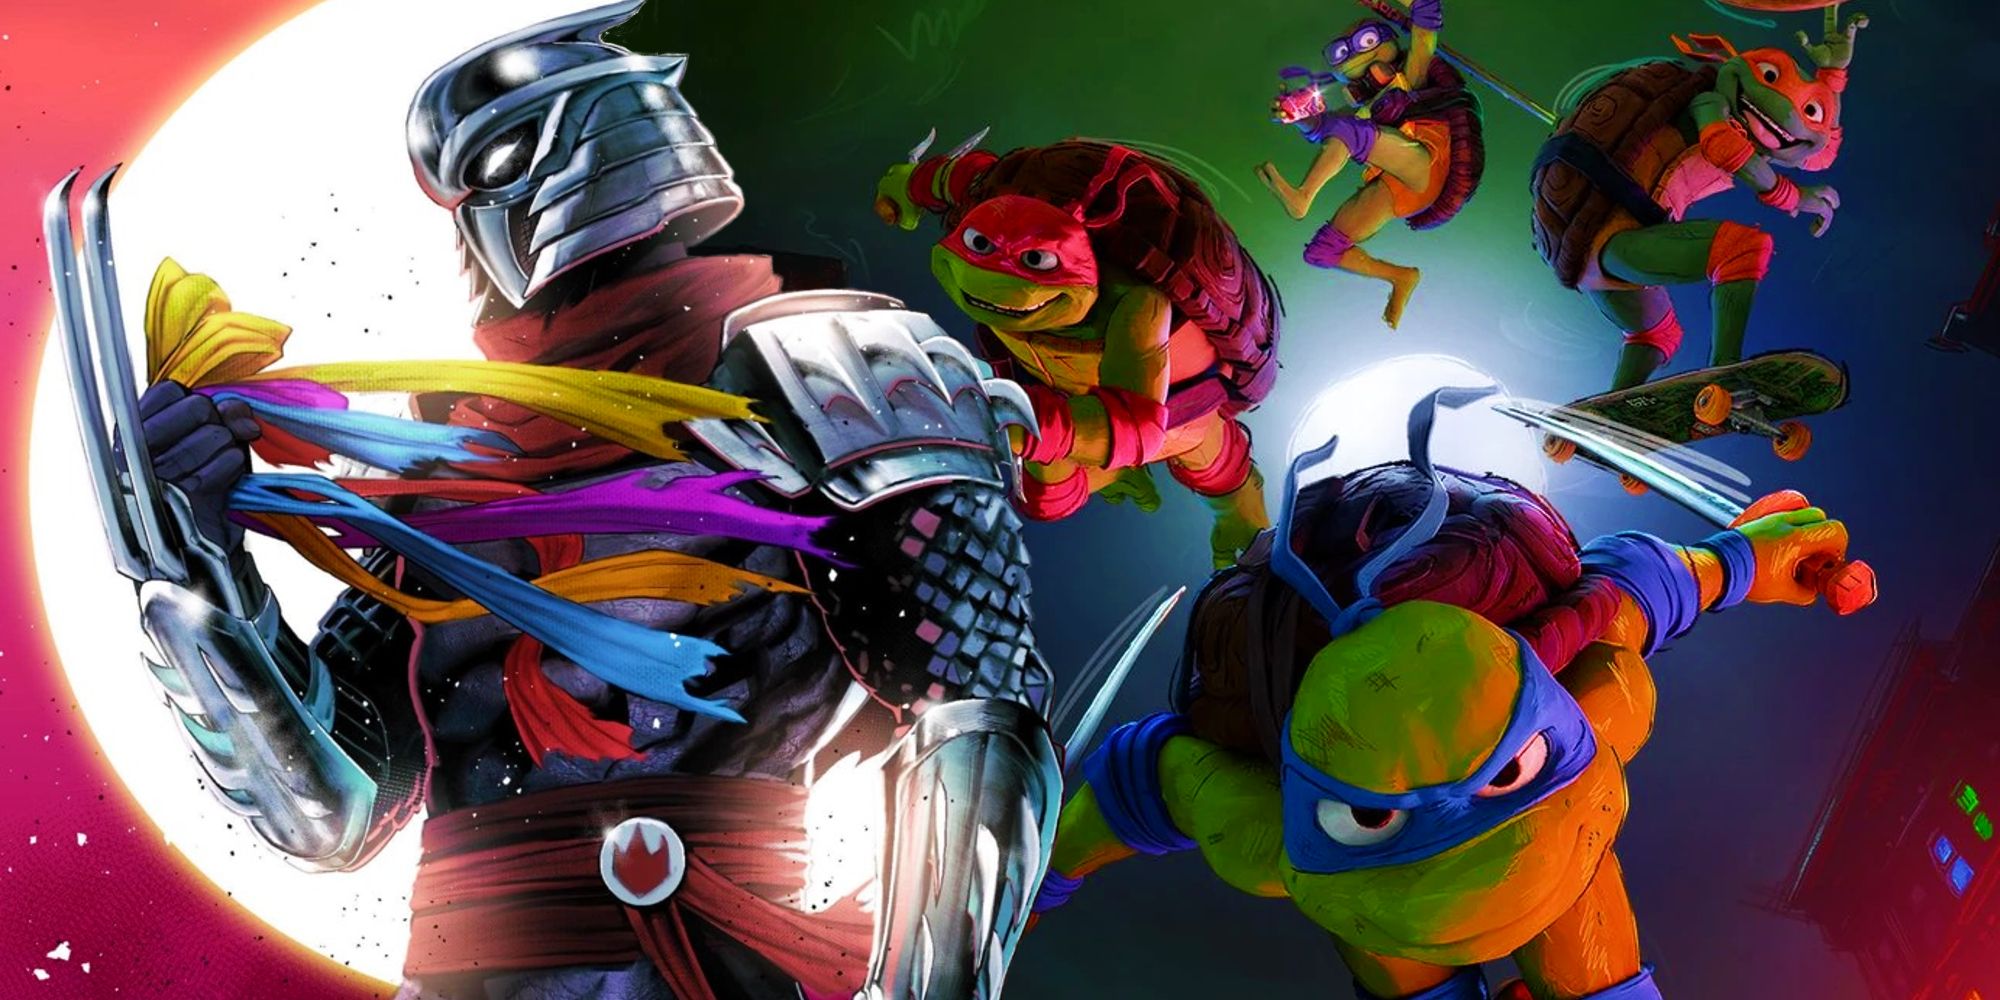 The poster for TMNT Mutant Mayhem next to comic artwork of Shredder